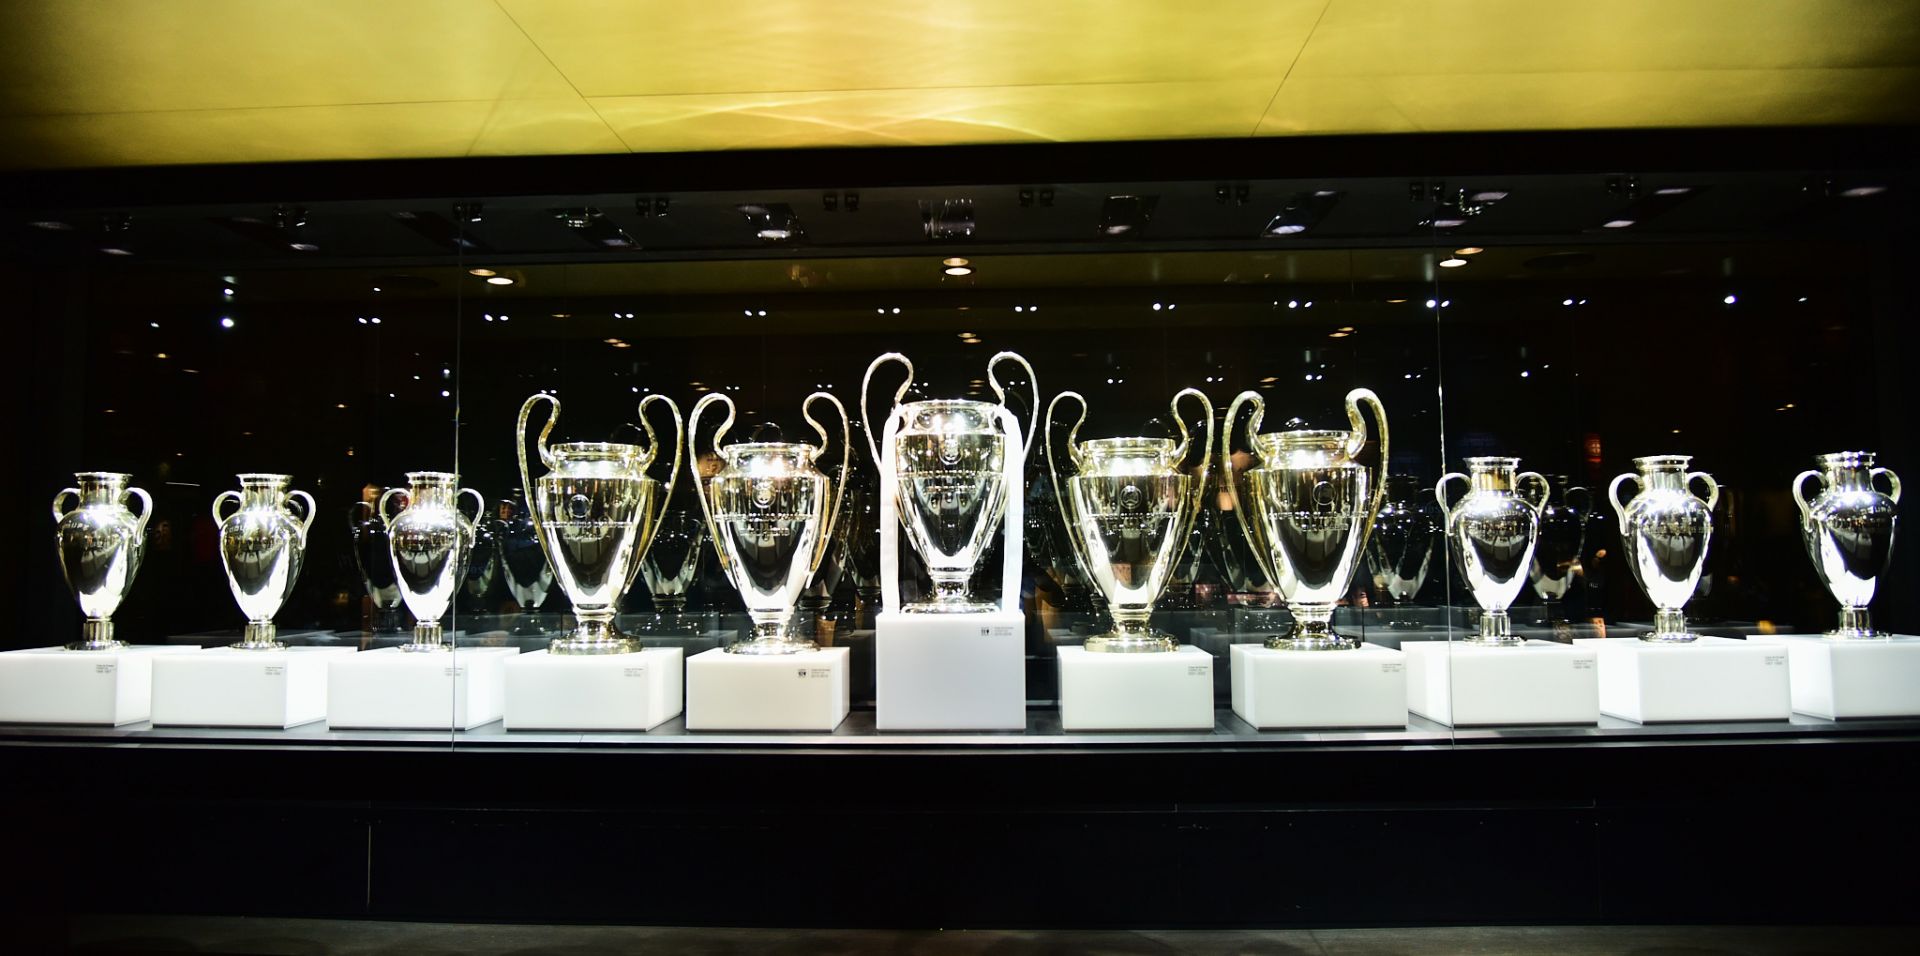 Các Cúp Champions League được đặt trong vị trí trang trọng nhất trong bảo tàng.